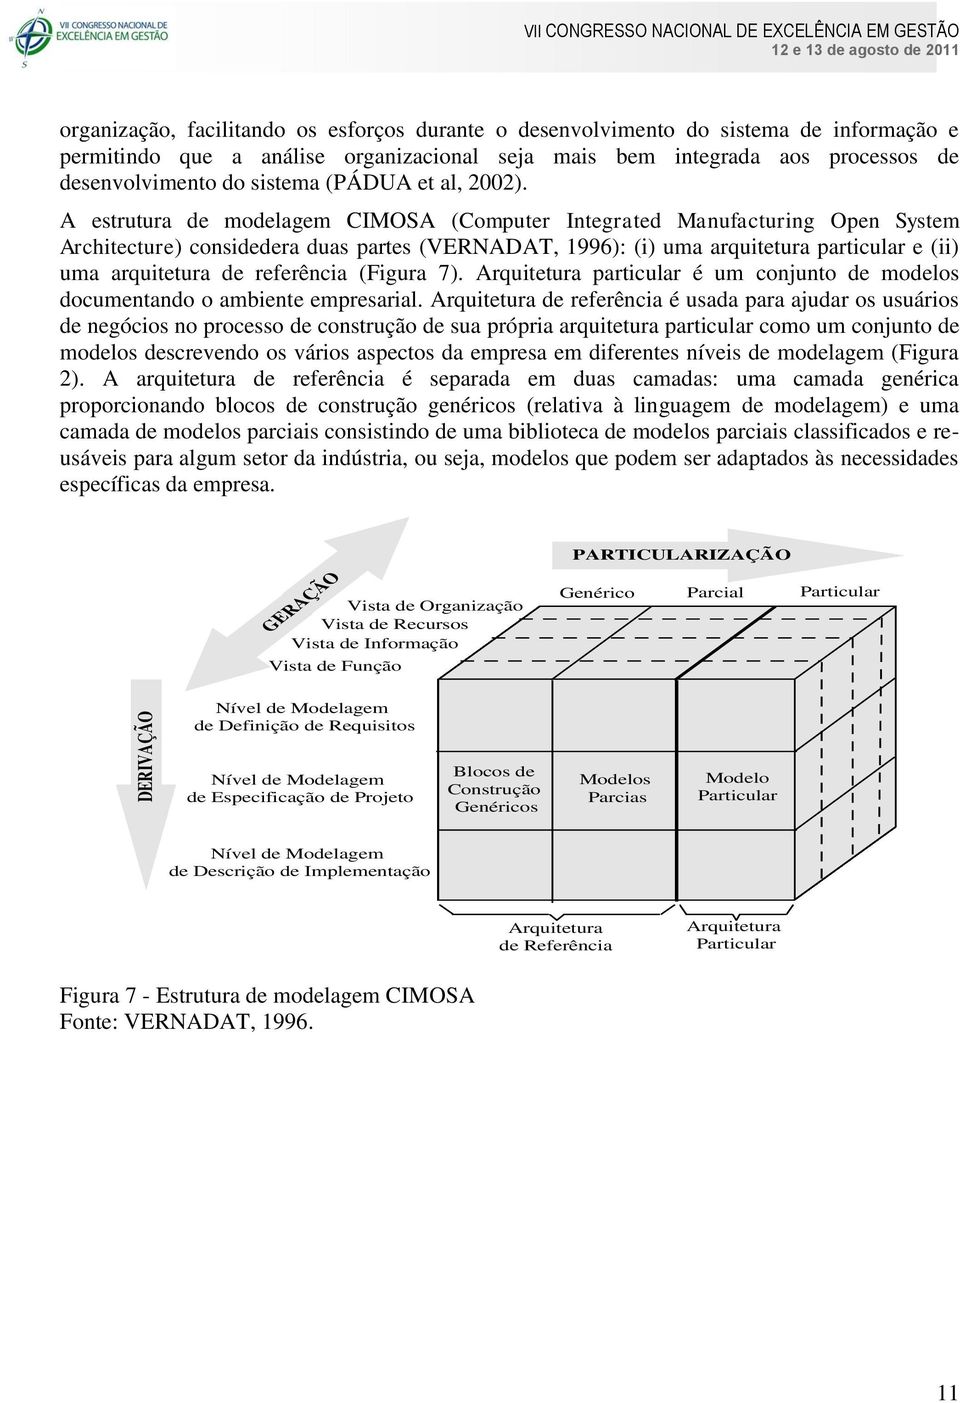 A estrutura de modelagem CIMOSA (Computer Integrated Manufacturing Open System Architecture) considedera duas partes (VERNADAT, 1996): (i) uma arquitetura particular e (ii) uma arquitetura de